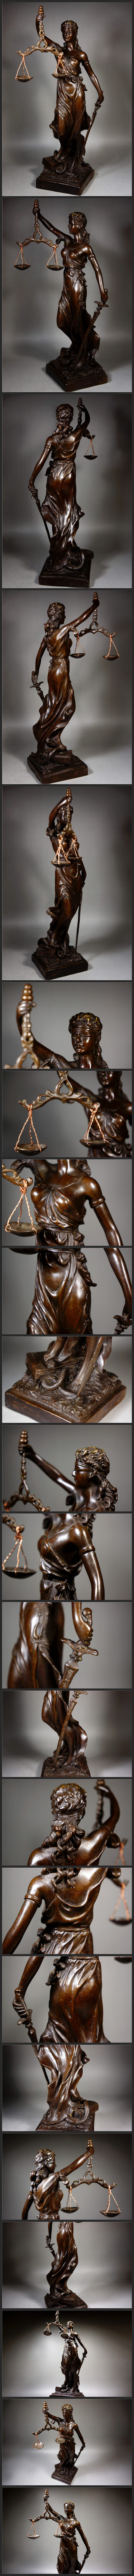 感染対策細工銅製 ギリシア神話 正義の女神 テミス造像高彫 鎮宅開運置物 極上質 高29.5cm 1.45kg 仏像